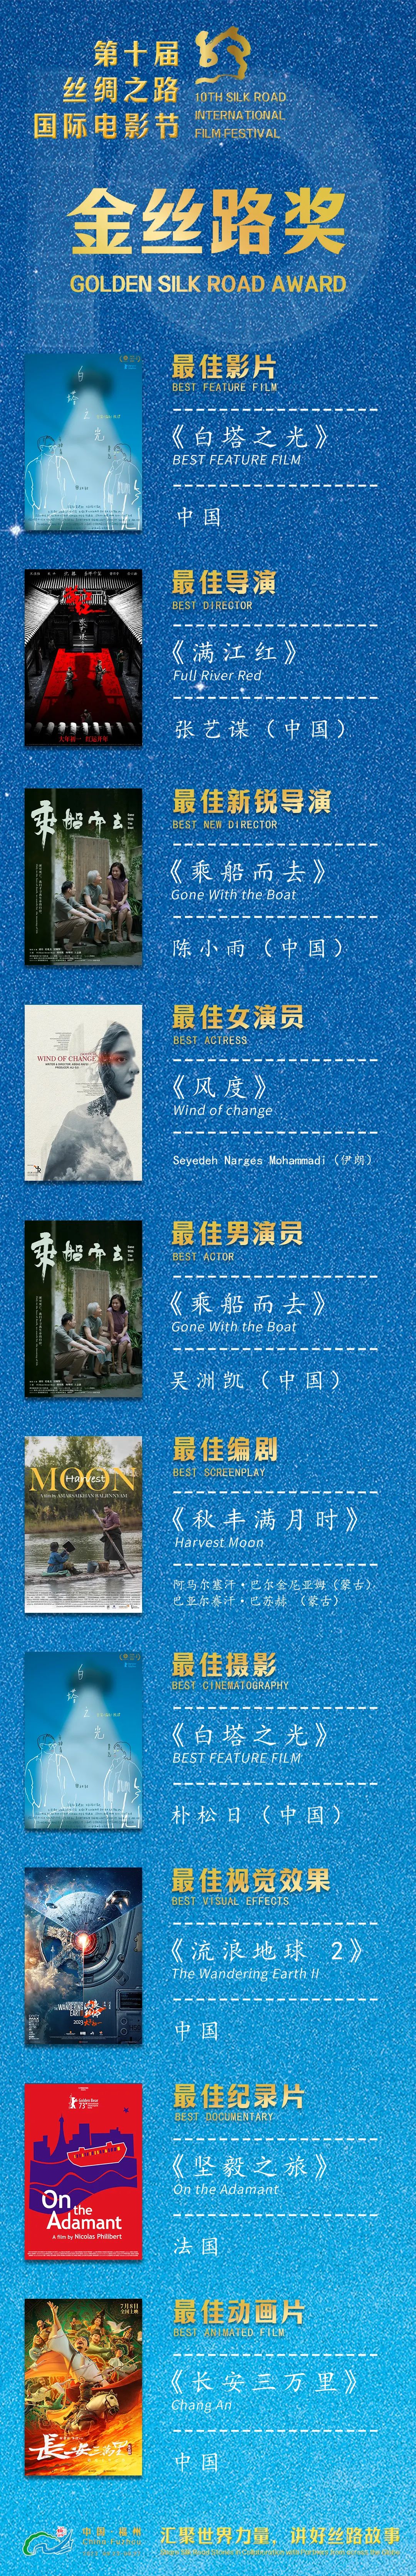 第十届丝绸之路国际电影节在福州圆满闭幕